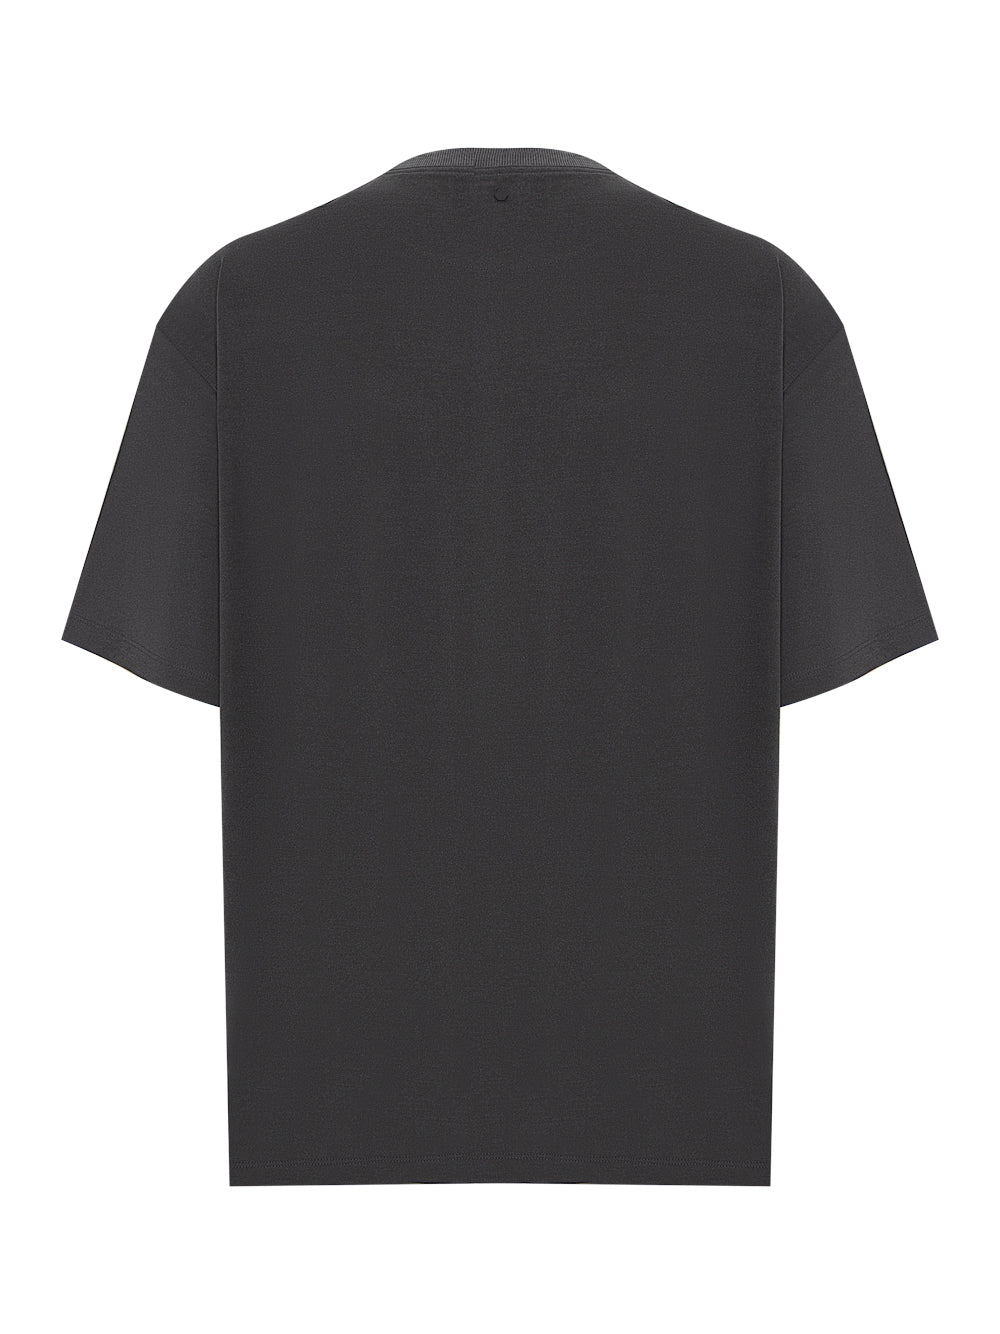 Pocket T-Shirts (Grey)